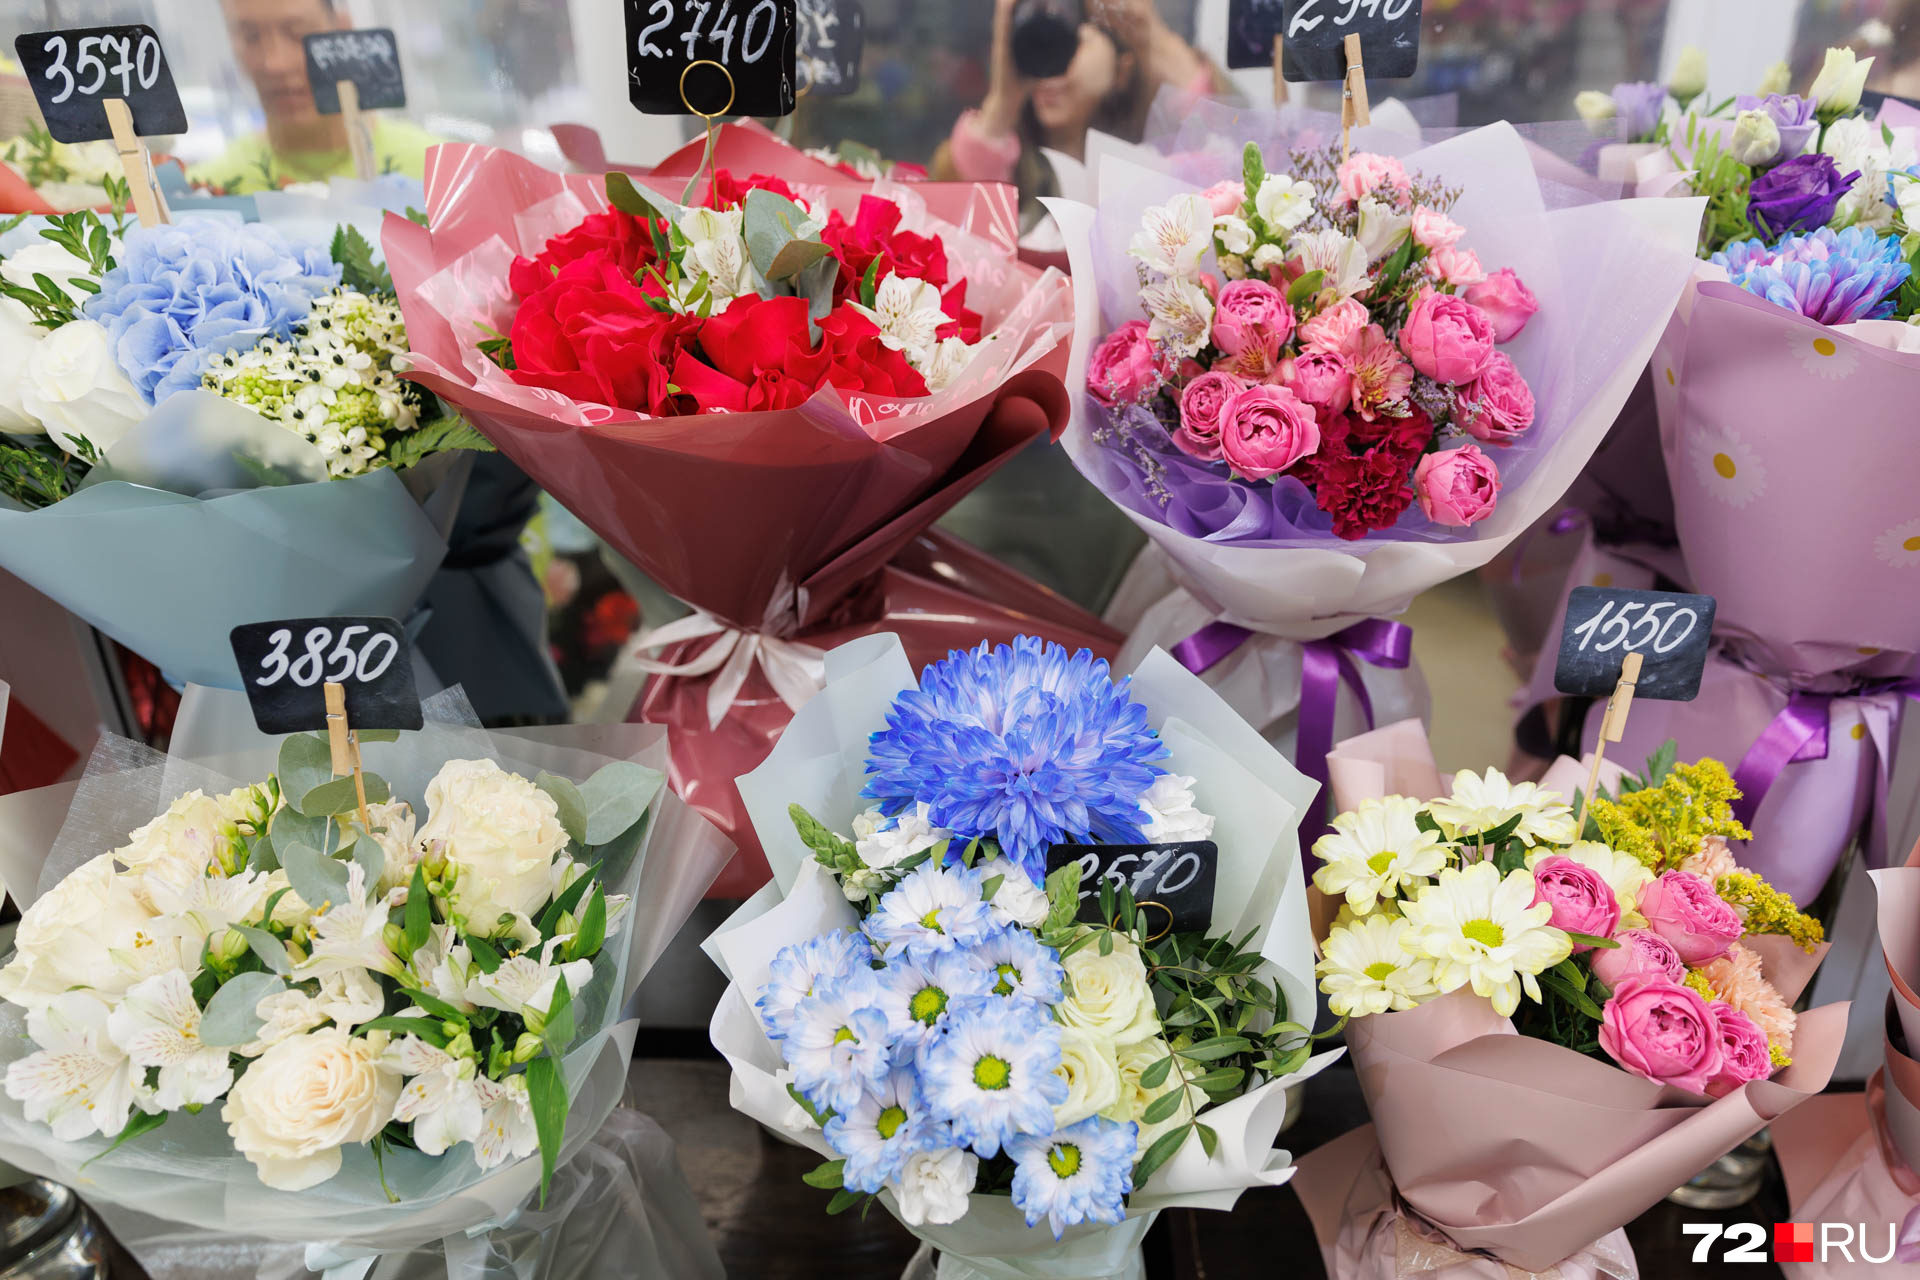 Салон Buketon предлагает большой выбор цветов в нежных оттенках. Сейчас на пике популярности пионовидные розы, гортензии, хризантемы